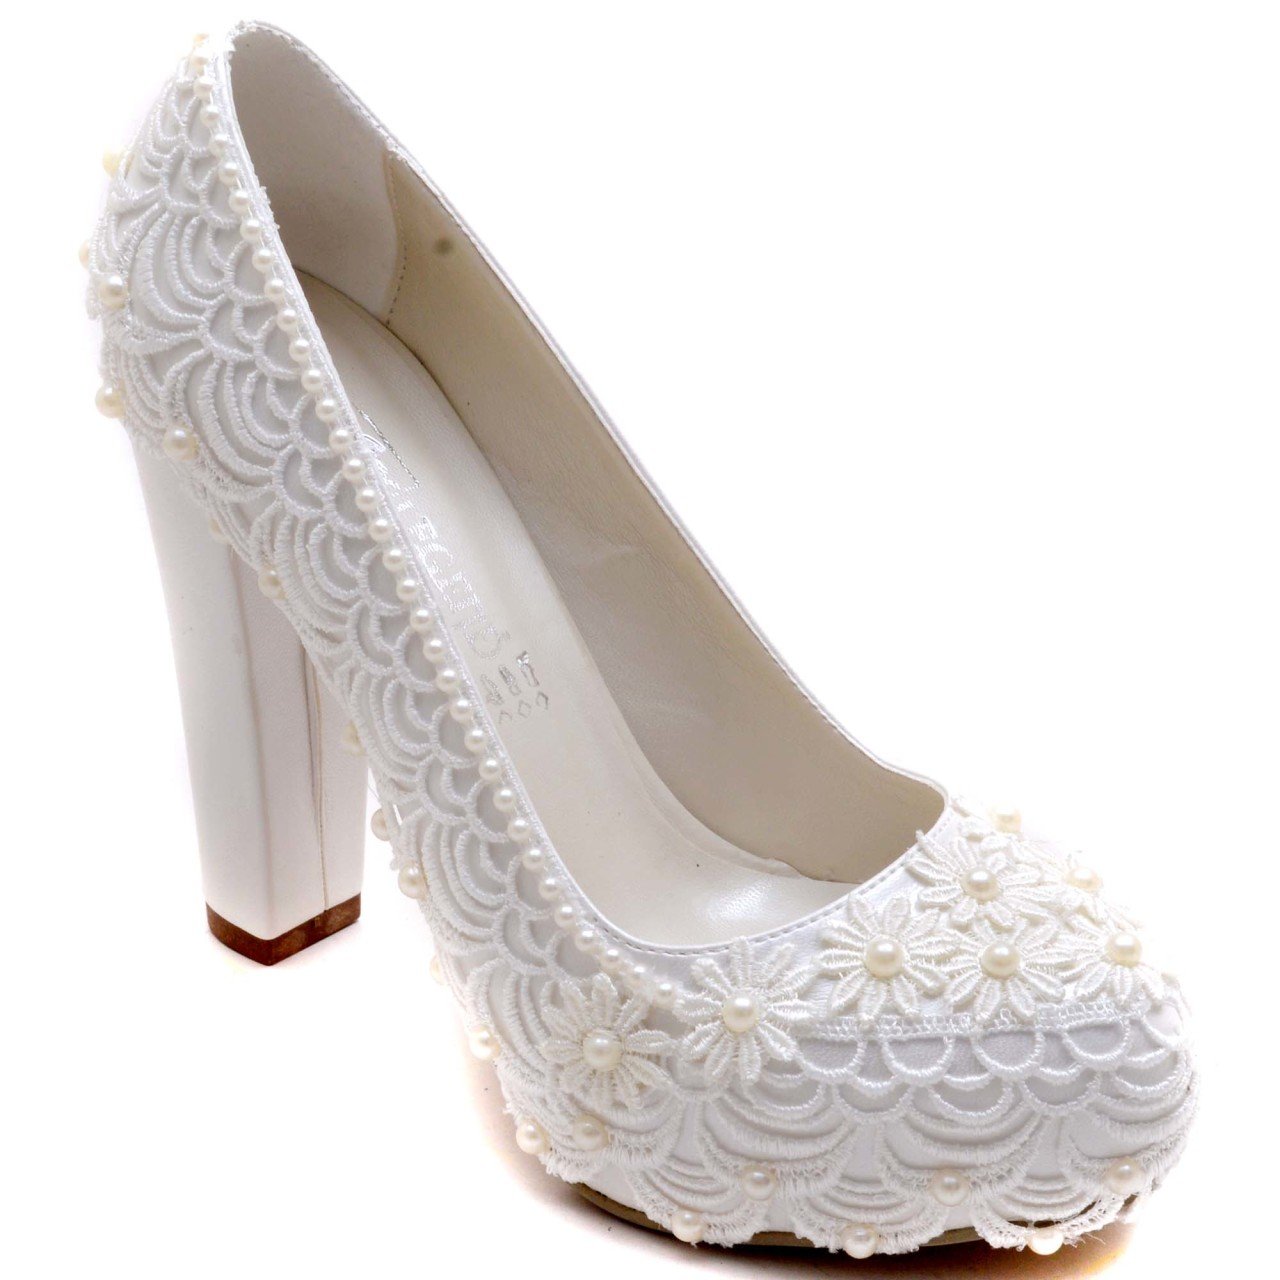 918-G Klasik Gelin Ayakkabısı - Beyaz